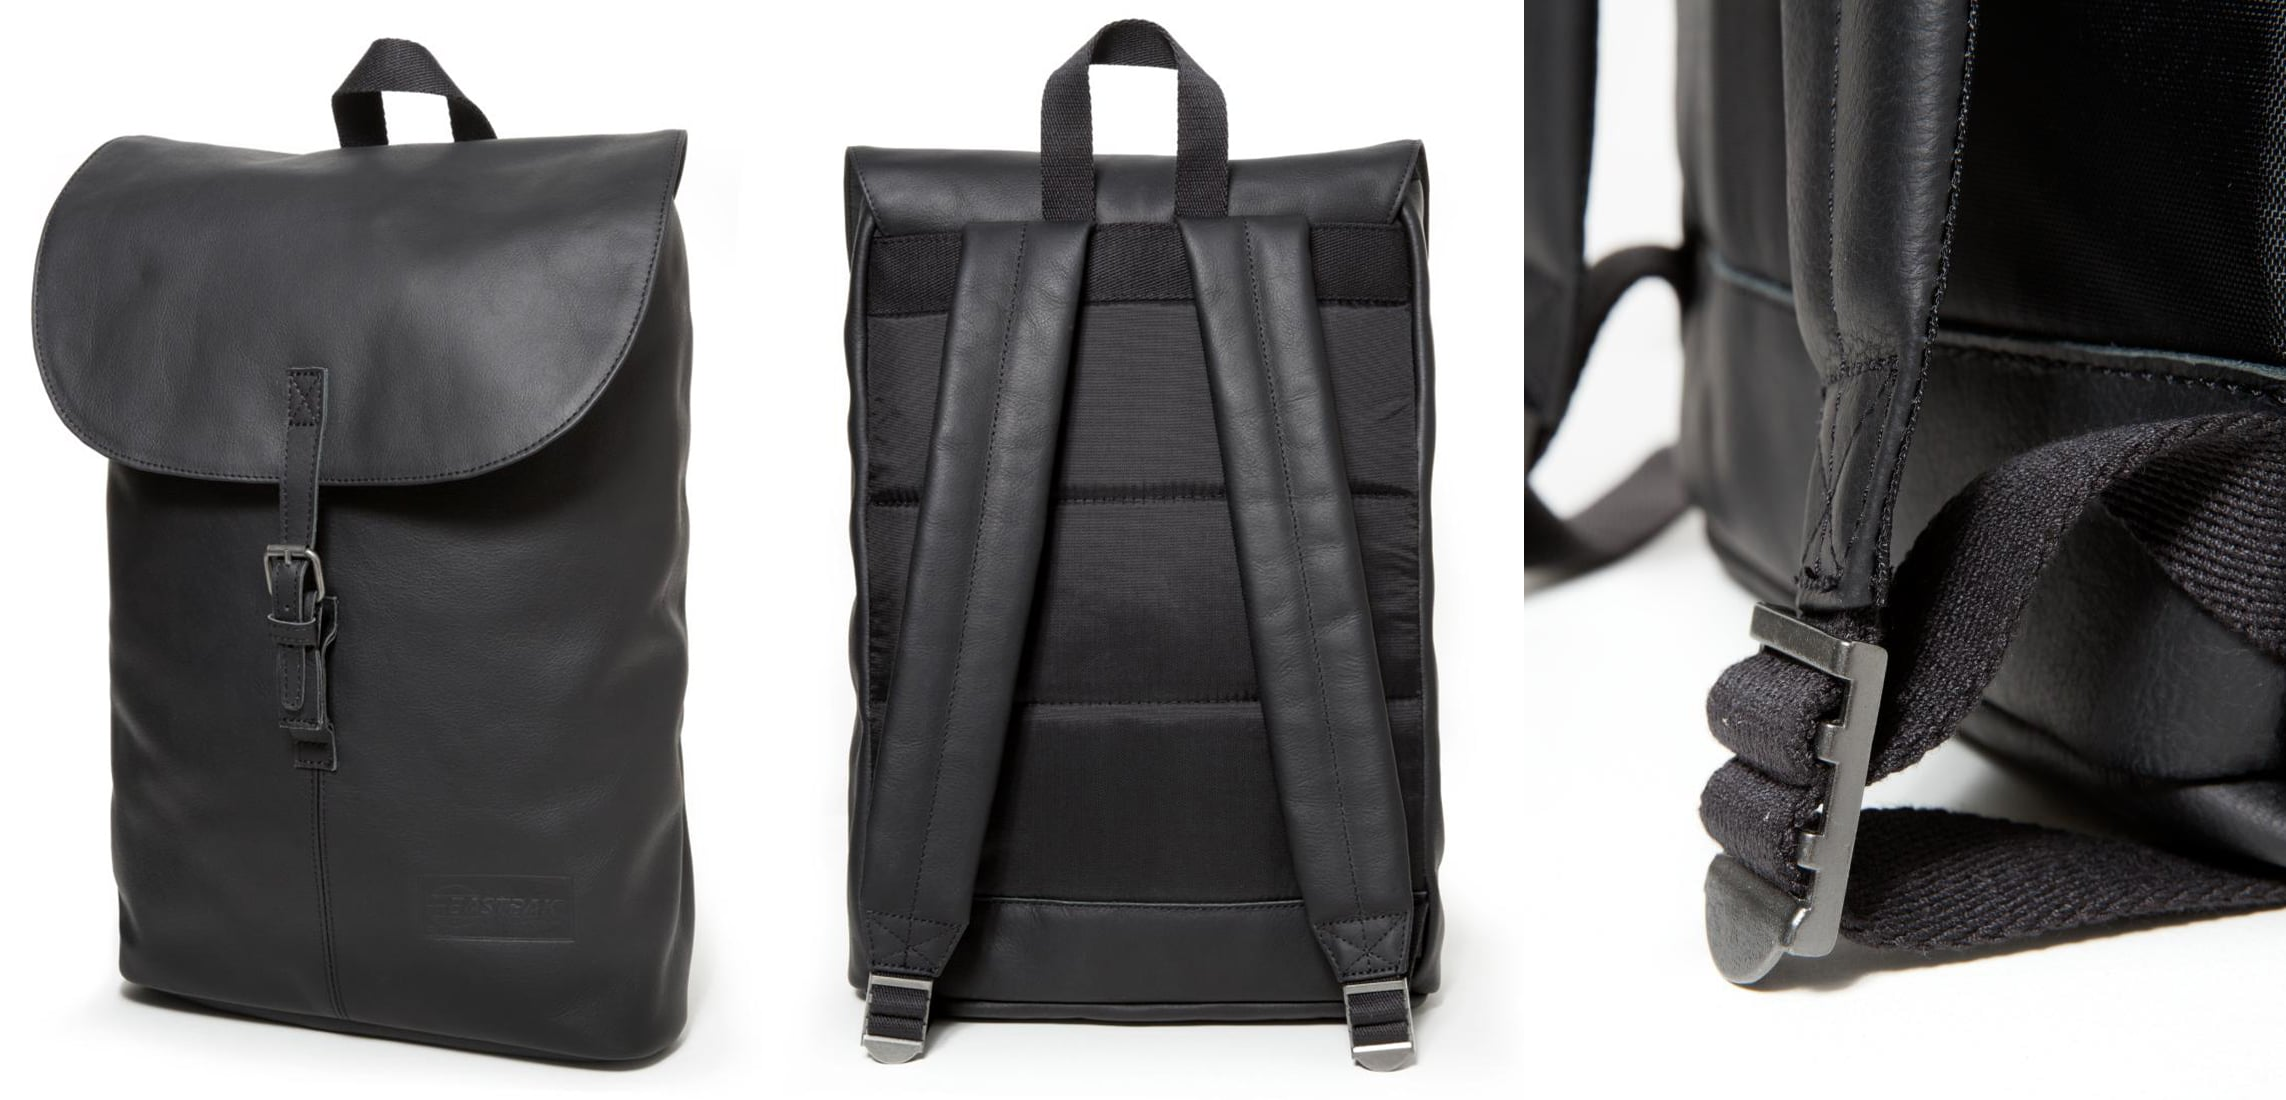 Eastpak CIERA/CORE COLORS Plecak black ink leather